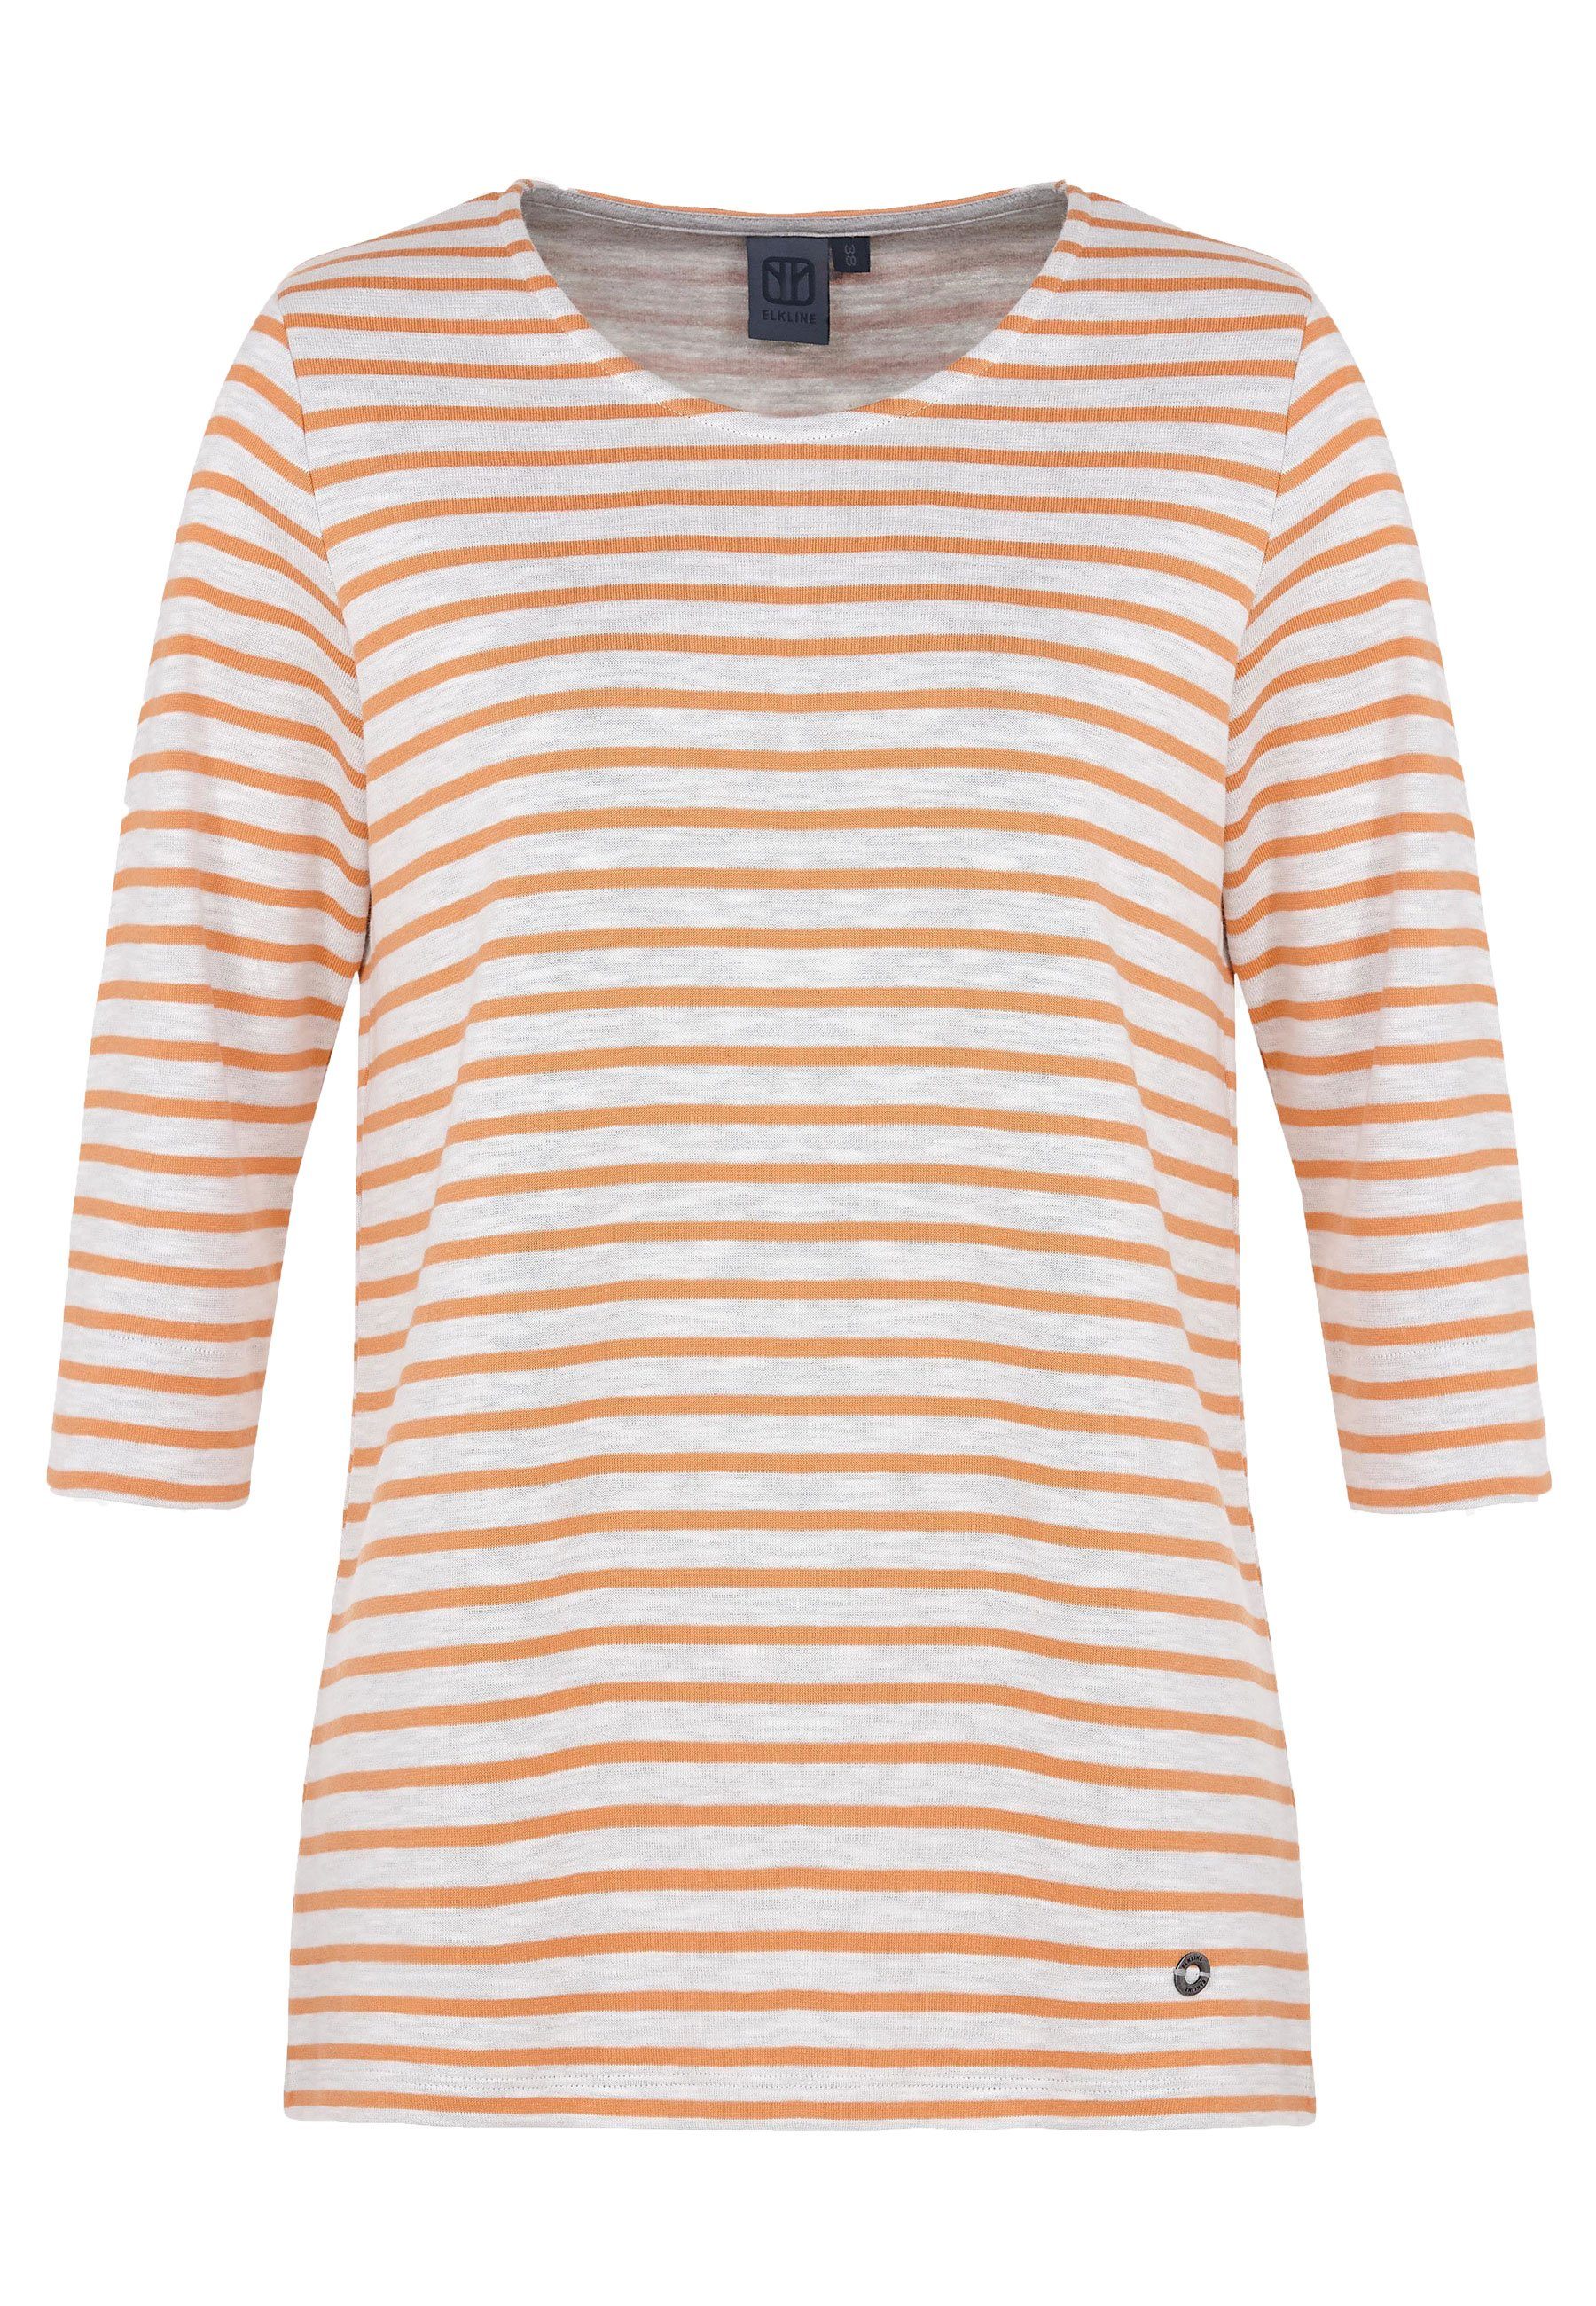 Elkline Sweatshirt 3/4 Rainbow Arm orange gestreift white soft Rundhals 